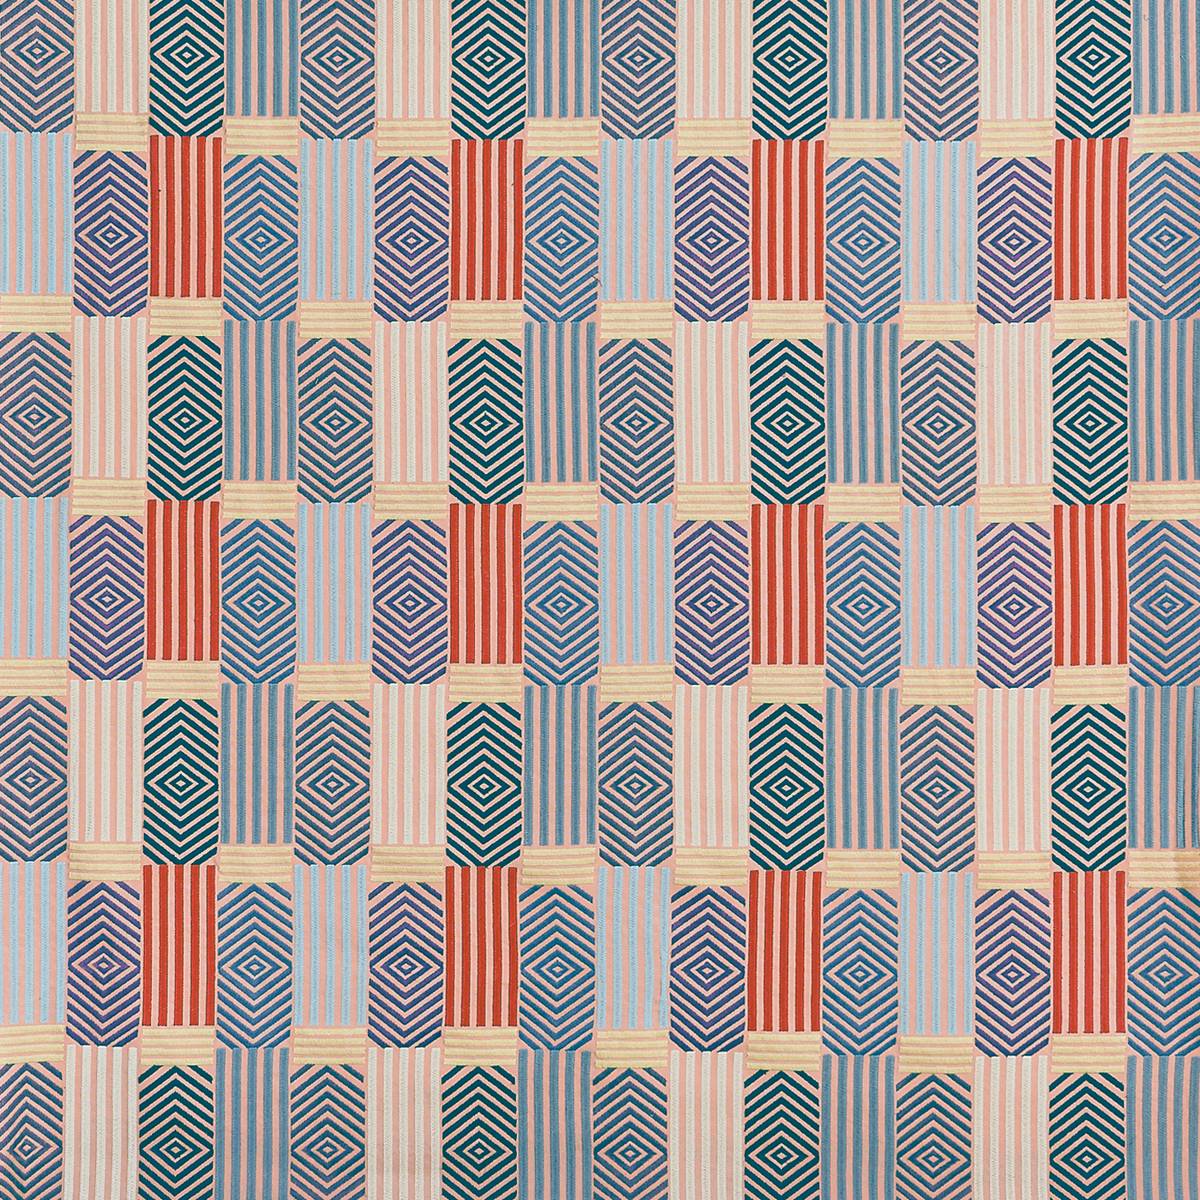 Blake Sherbet Fabric by Prestigious Textiles